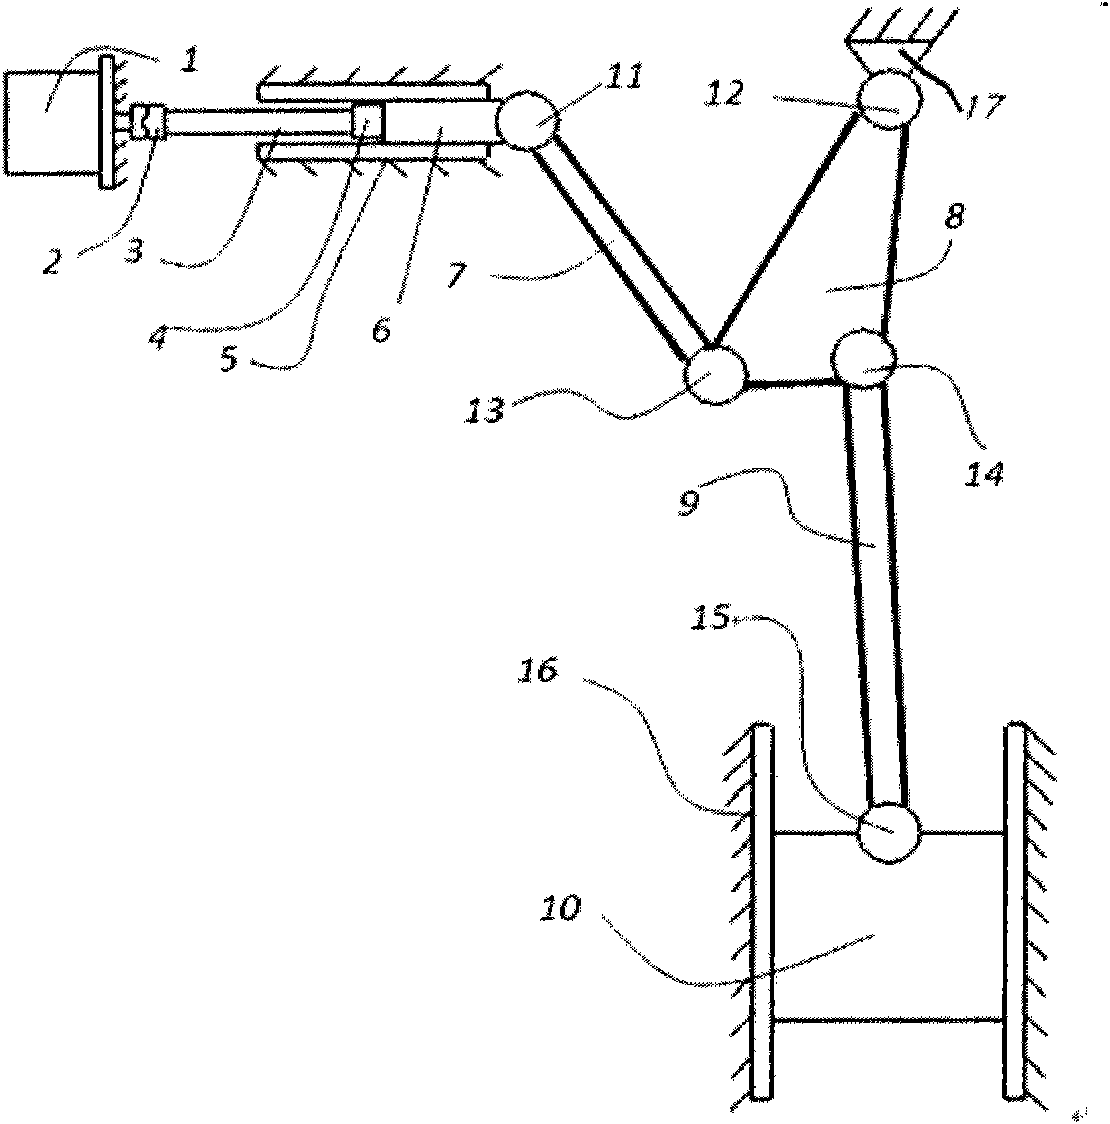 Toggle lever pressure transmission mechanism